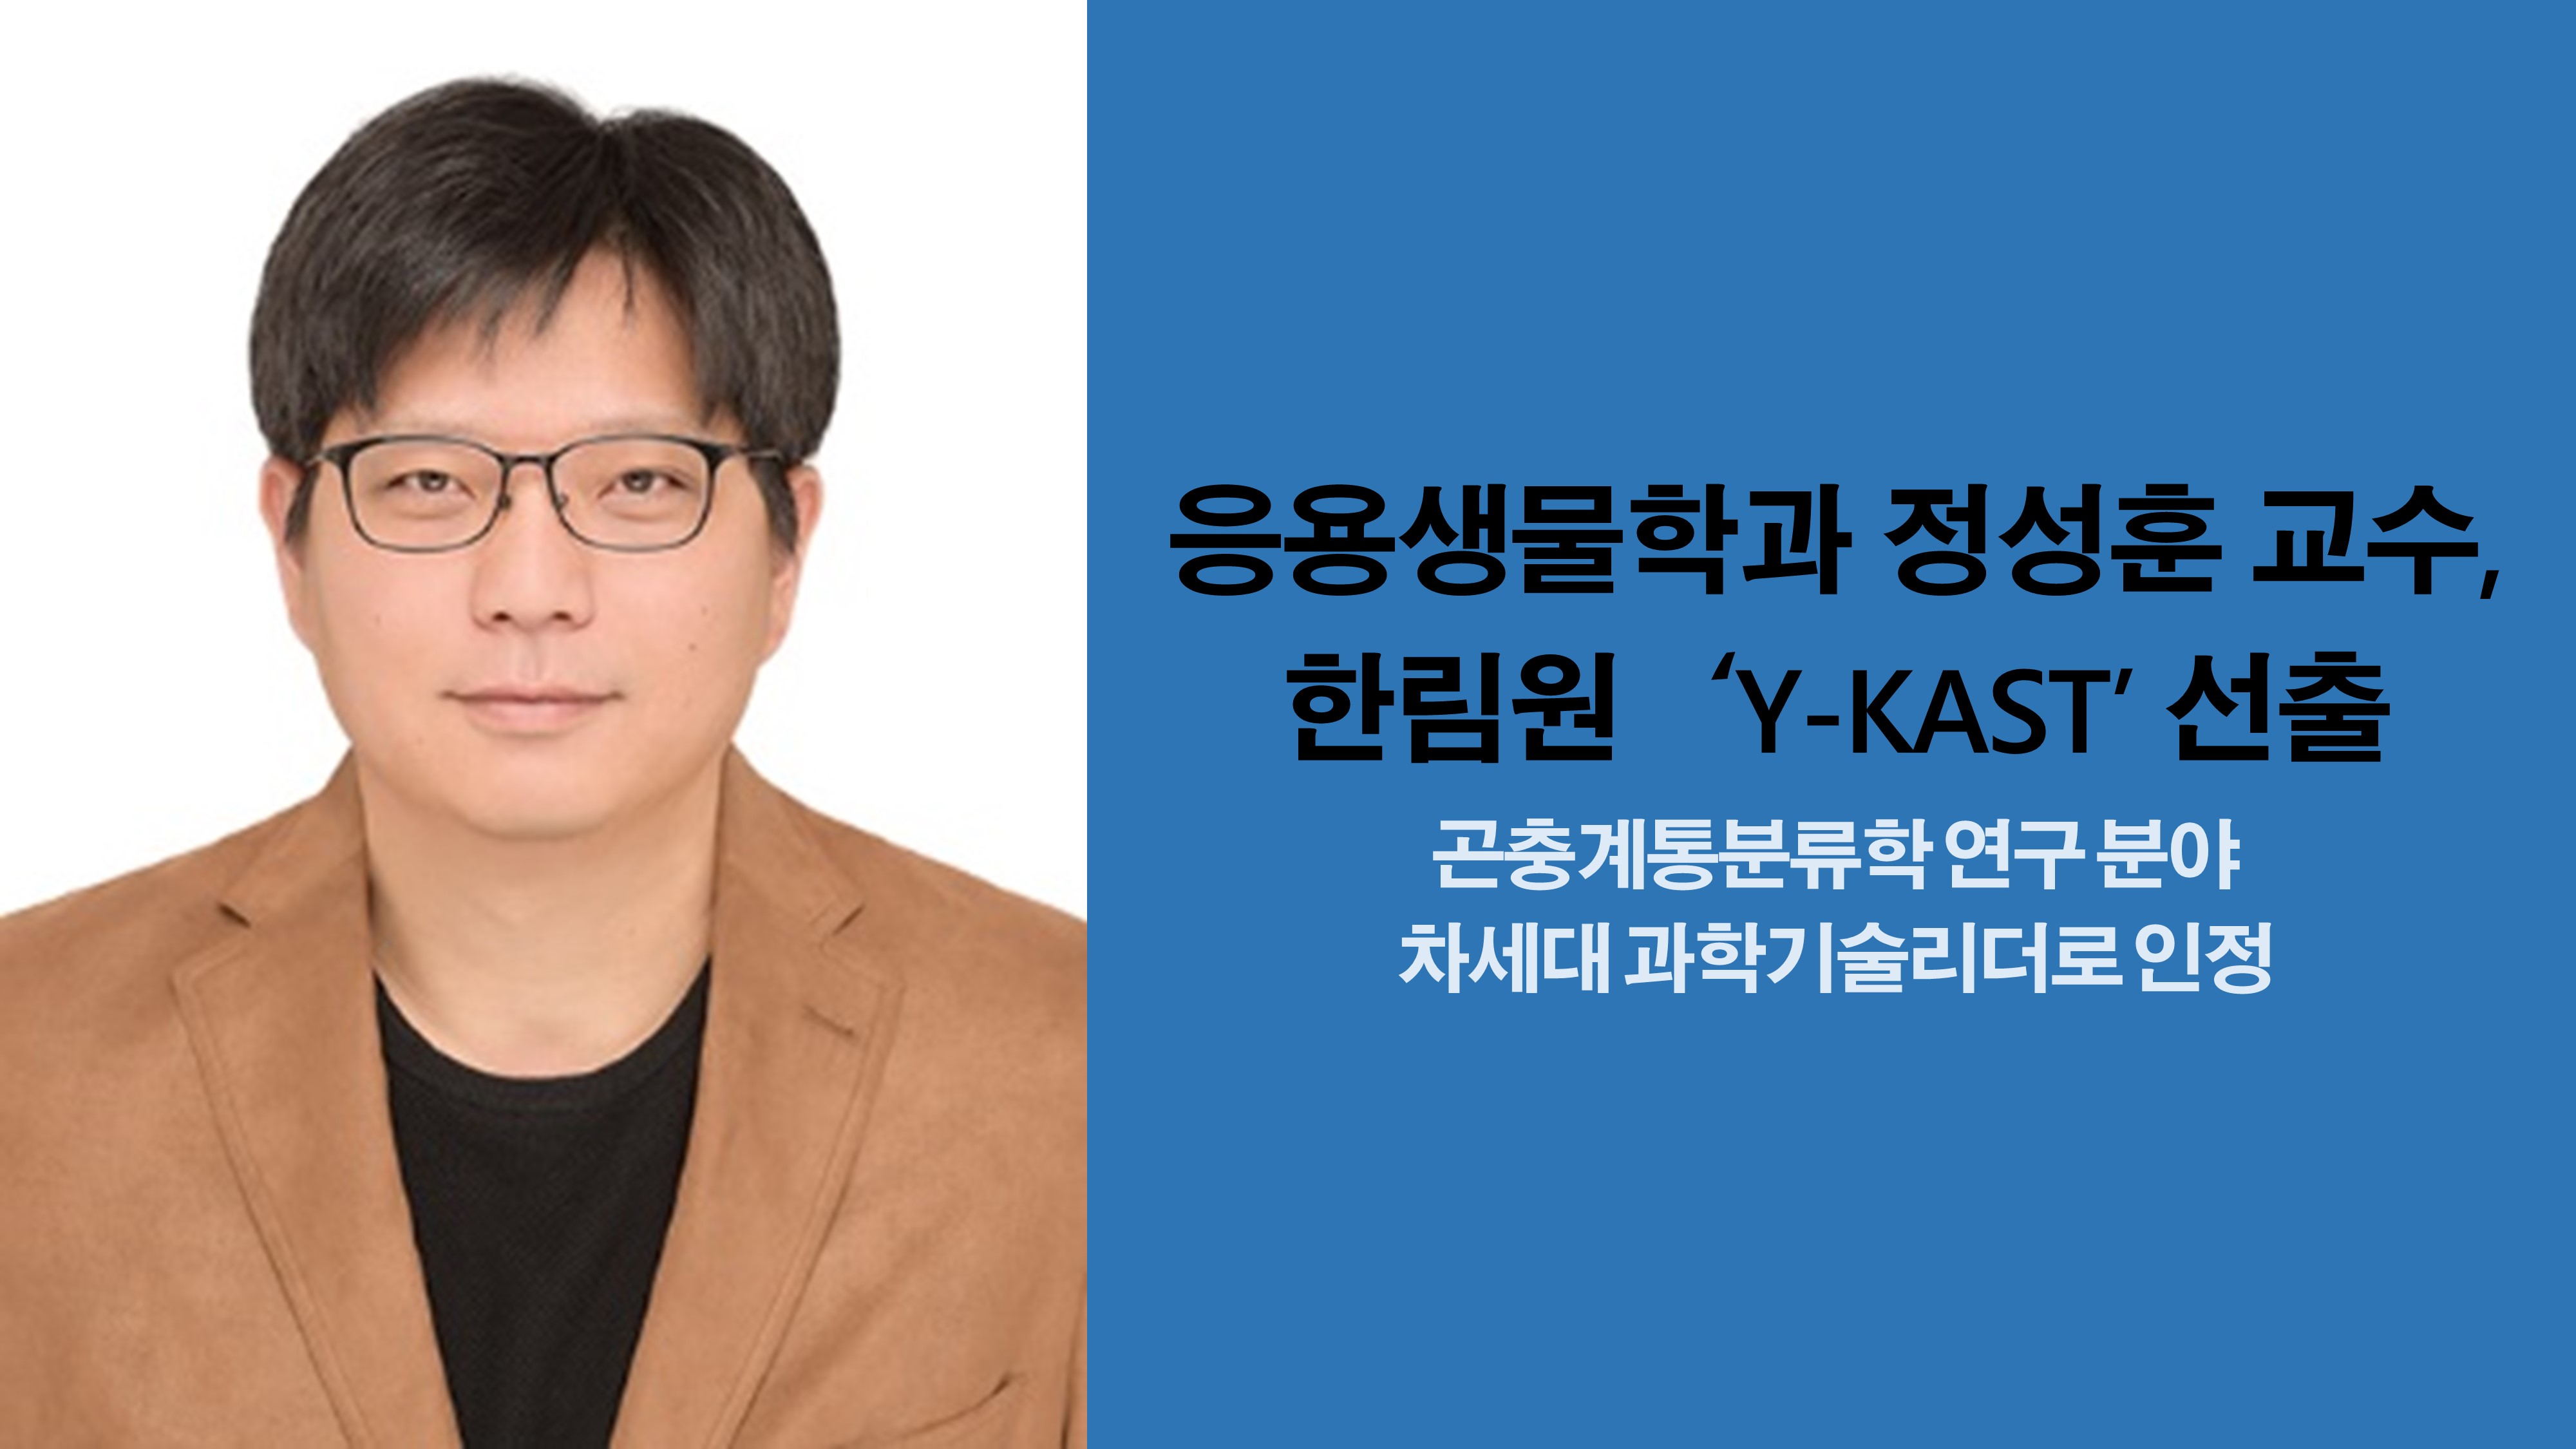 응용생물학과 정성훈 교수, 한림원 ‘Y-KAST’ 선출 사진1